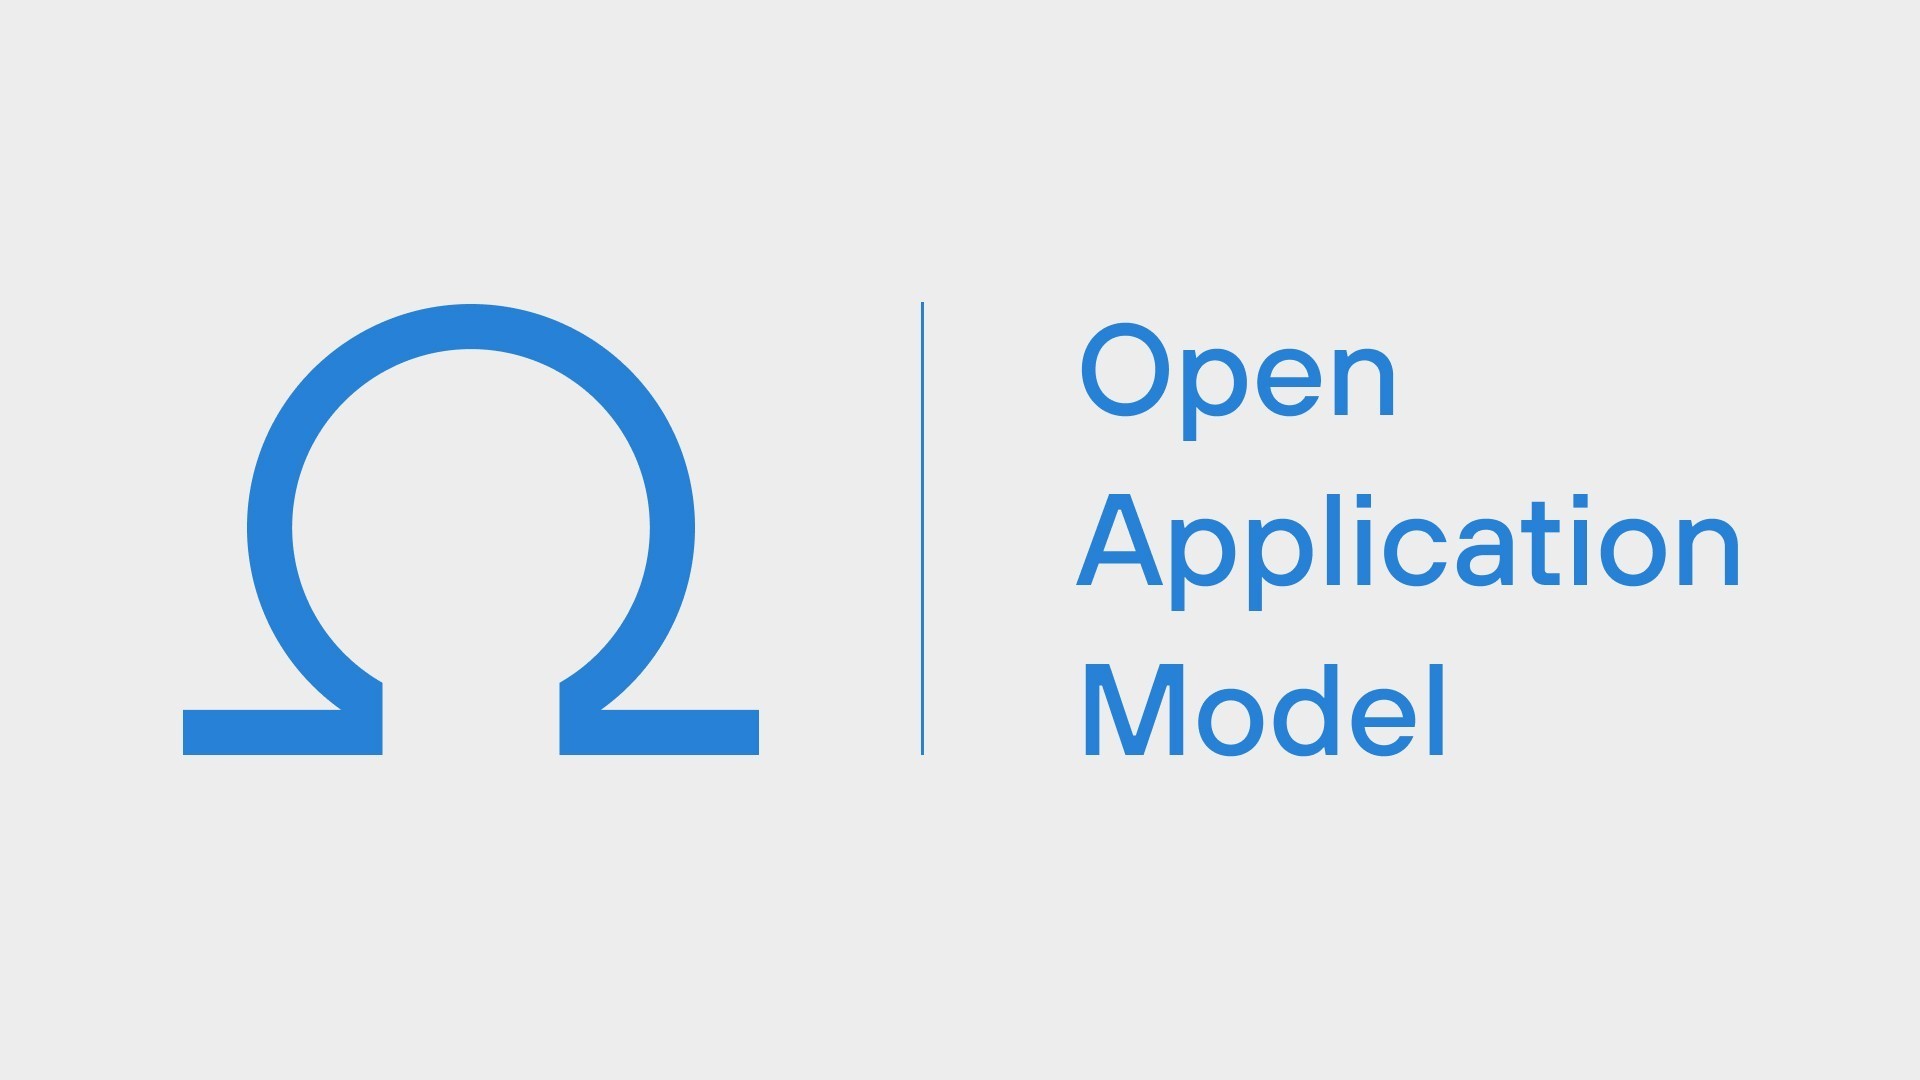 Open Application Model